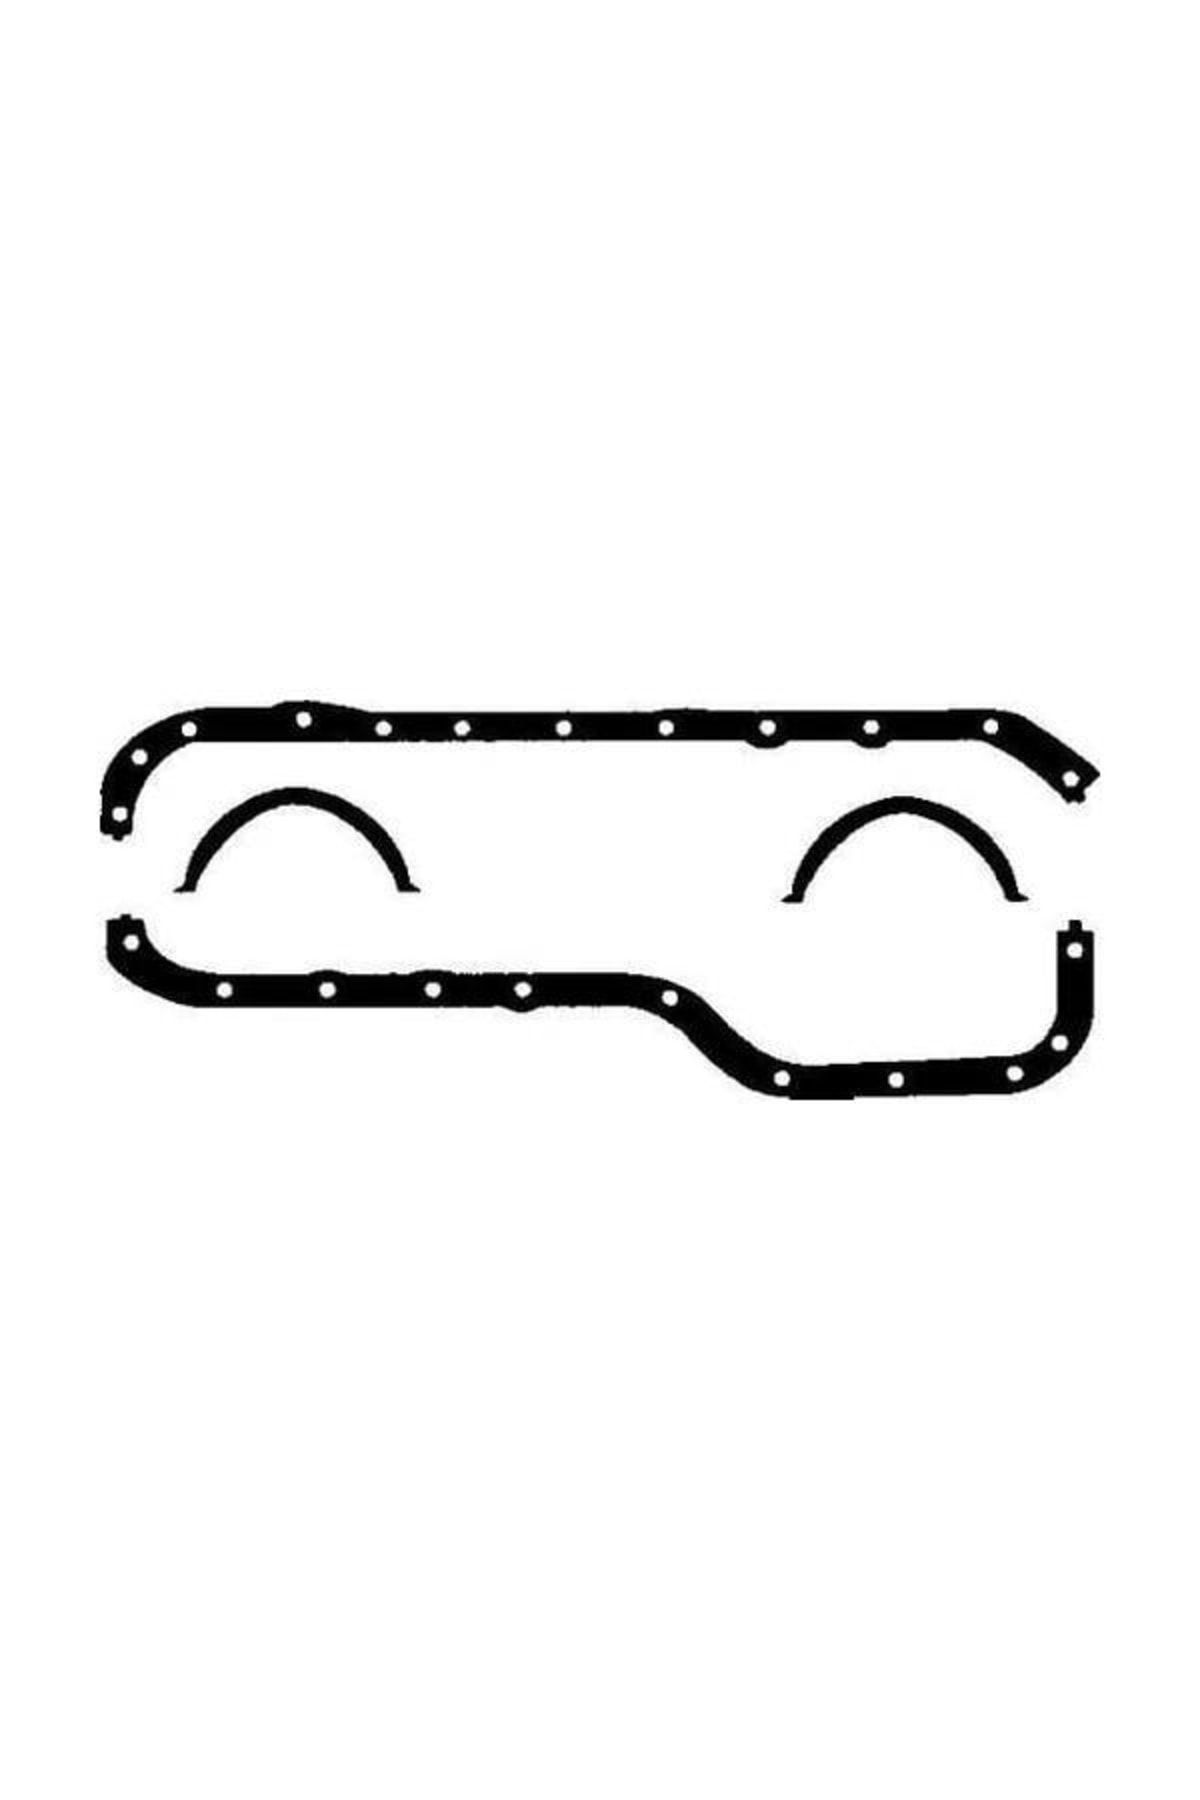 Royal Karter Contası Takım/ Kauçuk Mantar Ford Bm-ohc Taunus 76- -rt040380